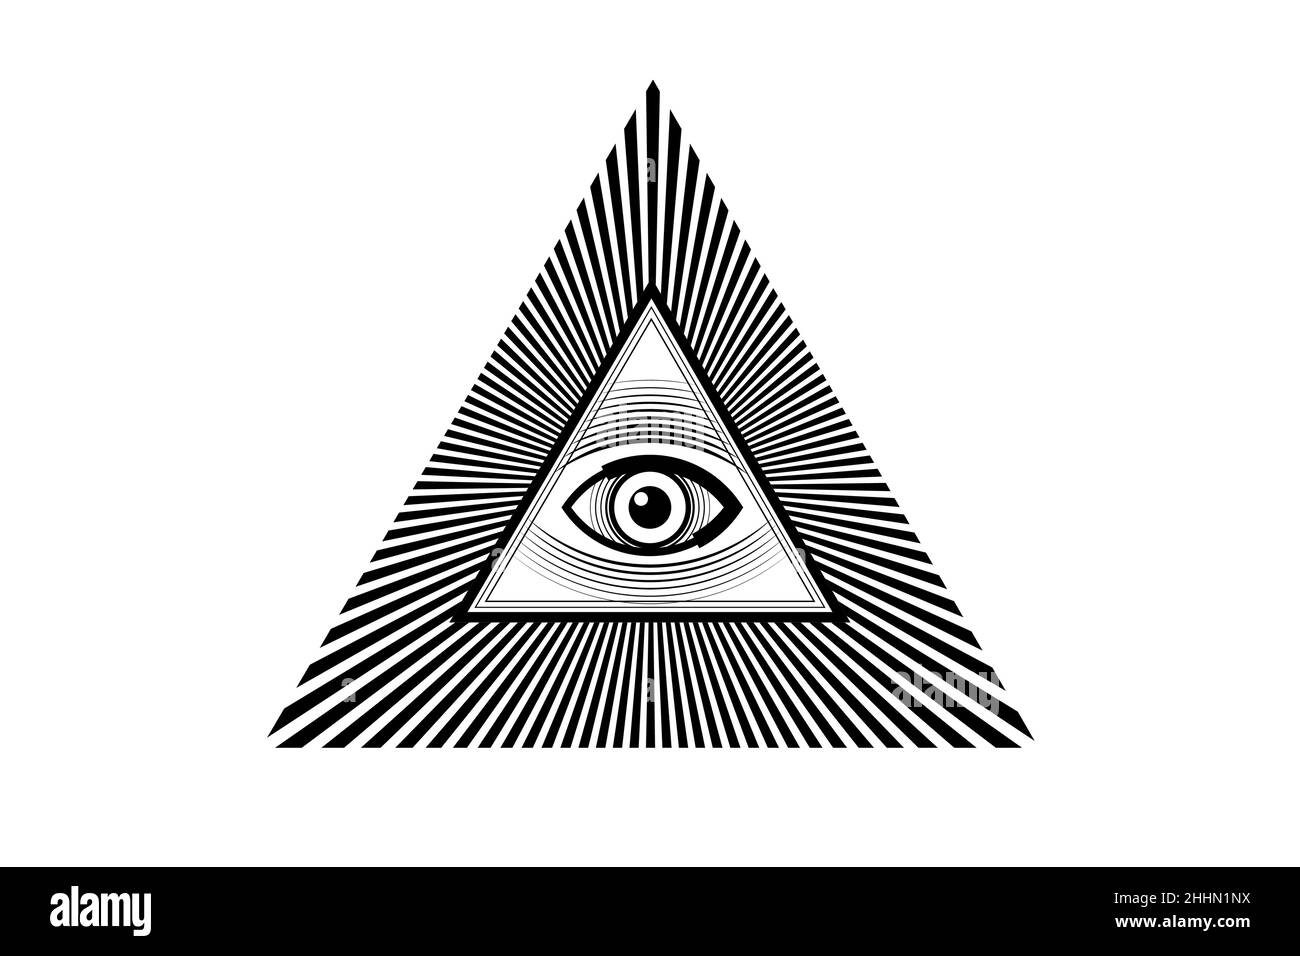 Sacro simbolo Masonico. Tutti gli occhi, il terzo occhio, l'occhio della Provvidenza, all'interno della piramide triangolare. Nuovo Ordine Mondiale. Icona nera alchimia, religione, Illustrazione Vettoriale